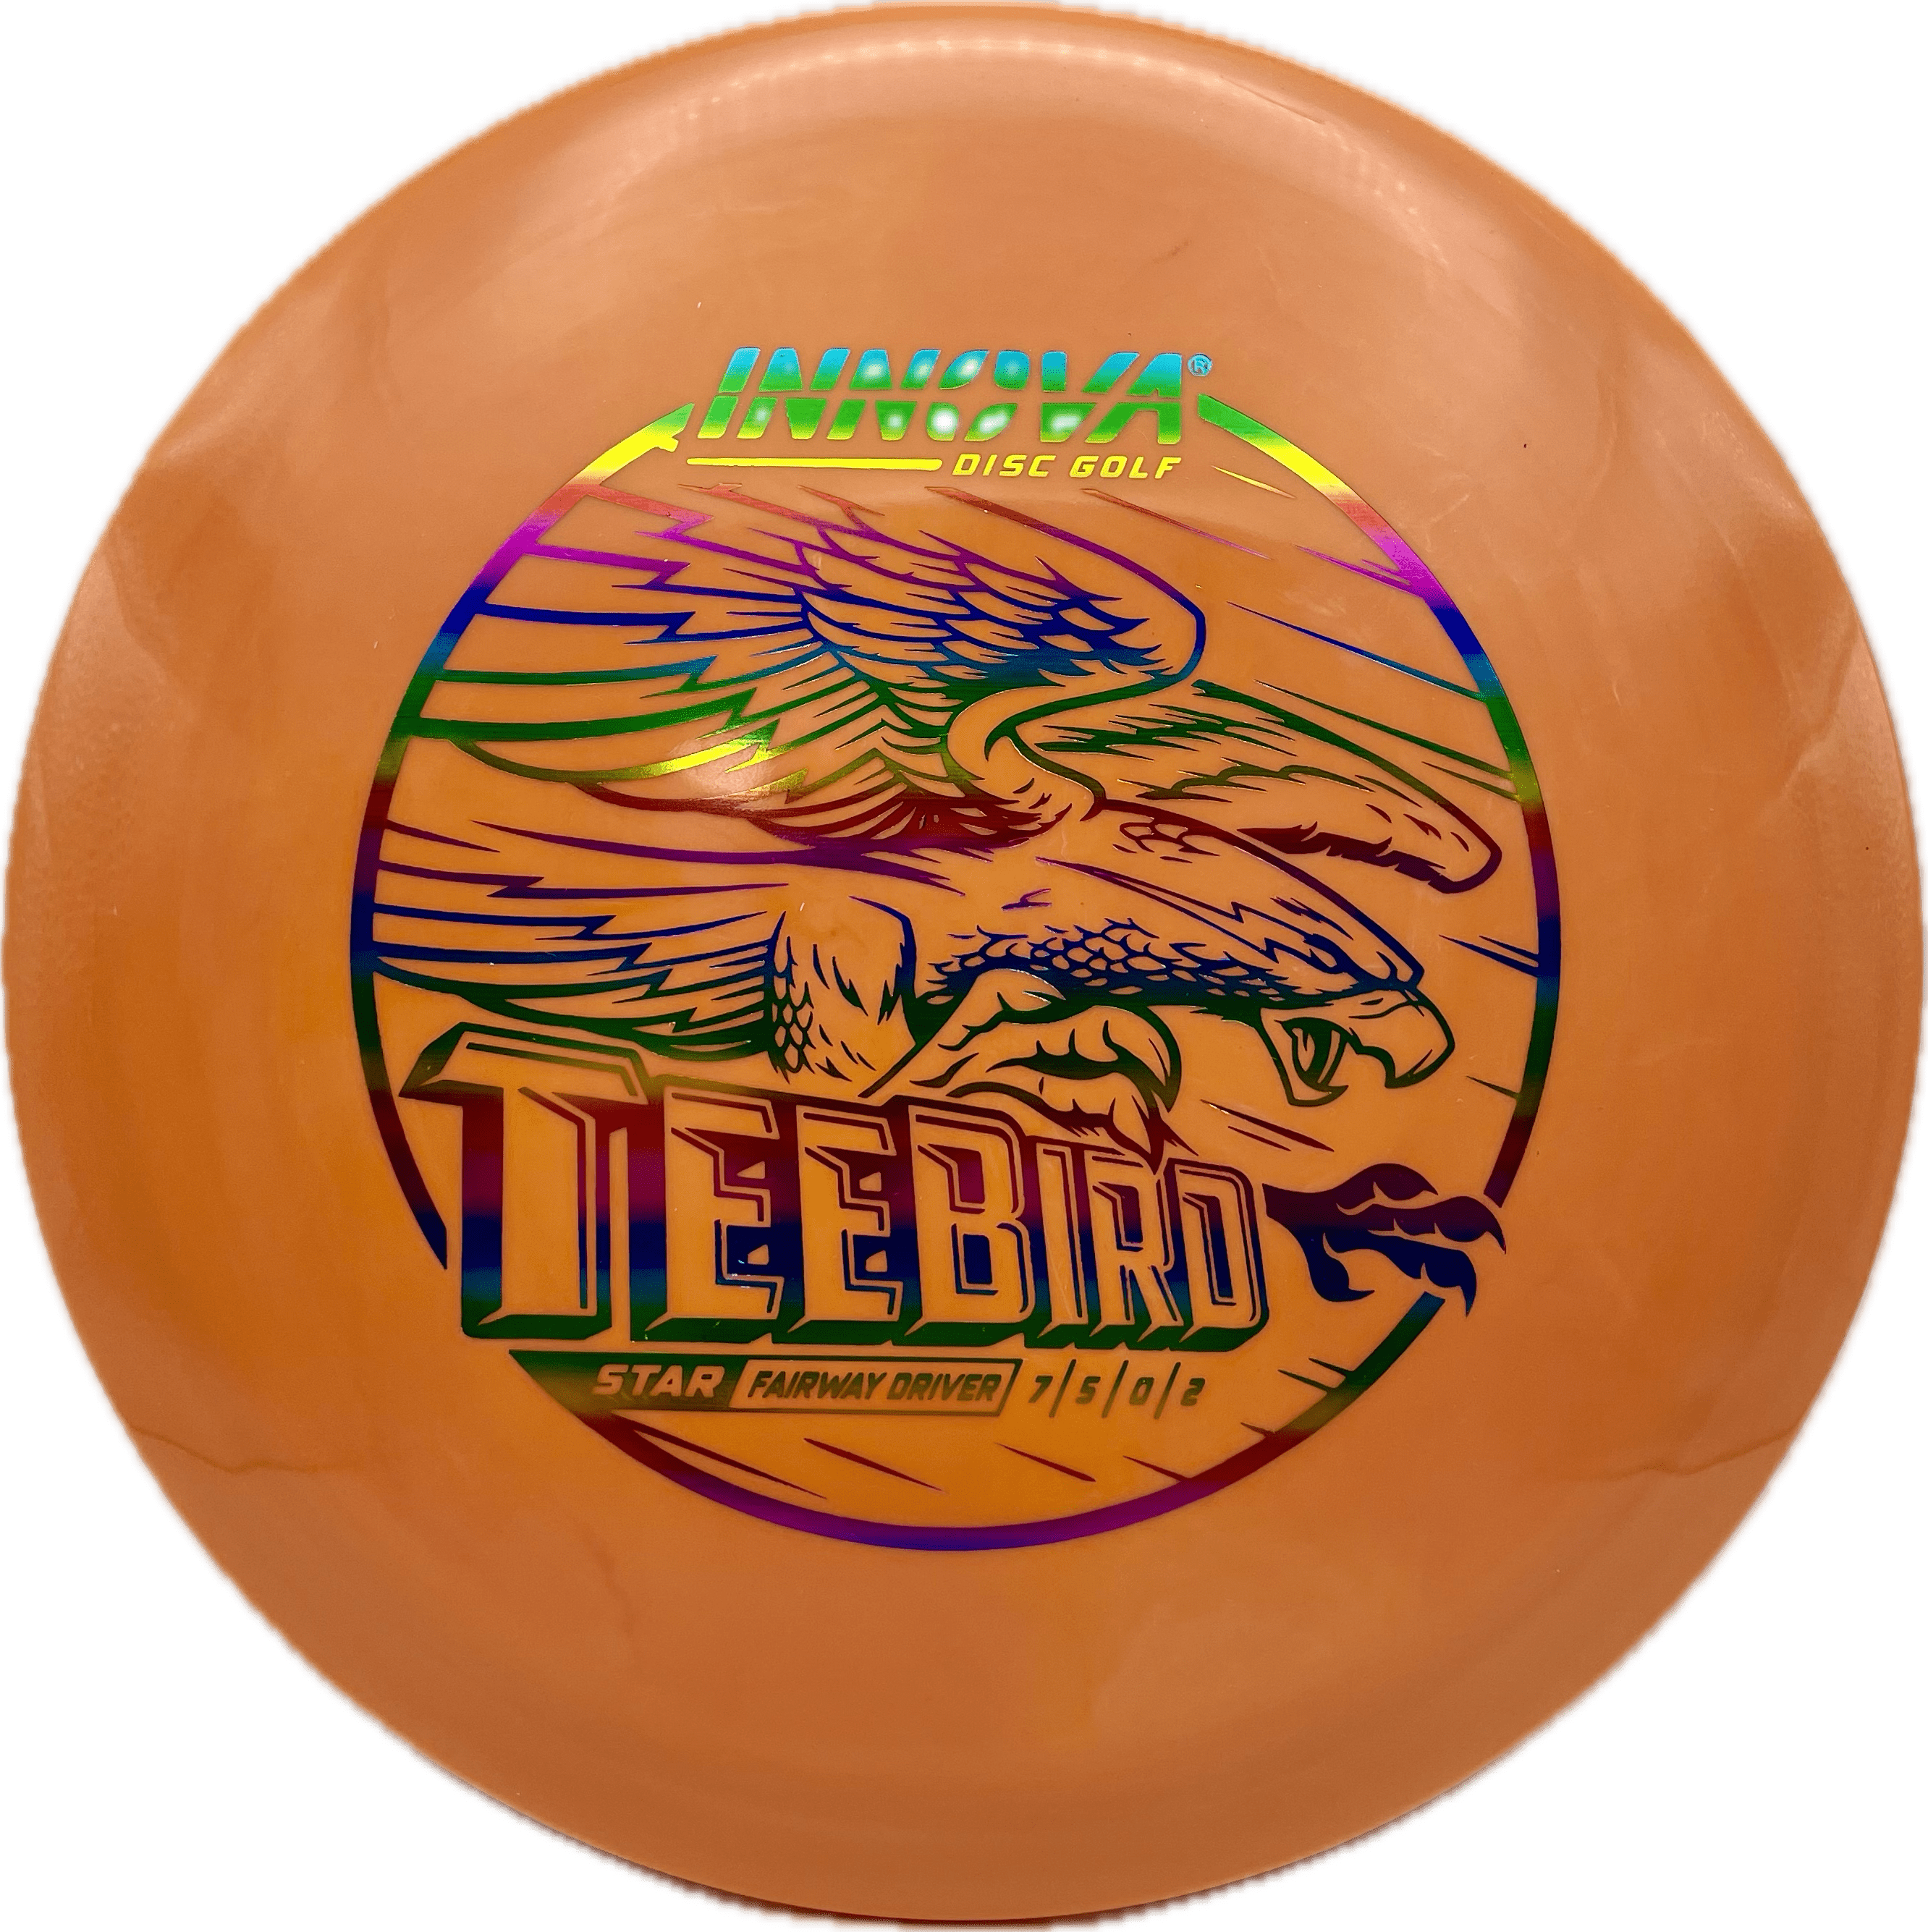 Innova Disc Innova Teebird, Star, 170, Pinkish-Orange, Rainbow Metallic